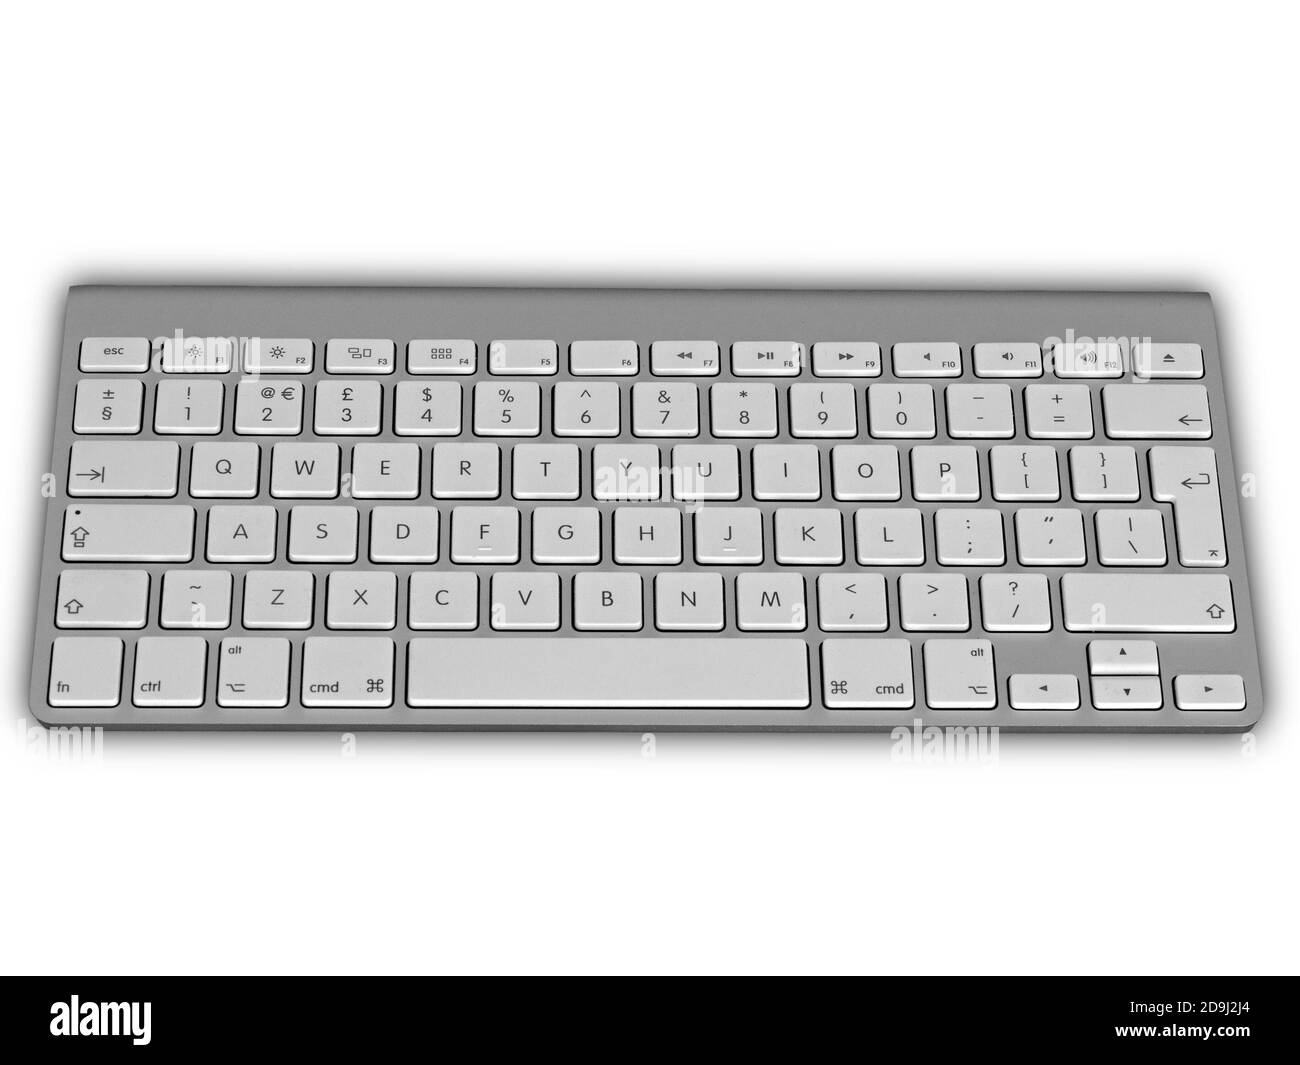 Englische tastatur Schwarzweiß-Stockfotos und -bilder - Alamy